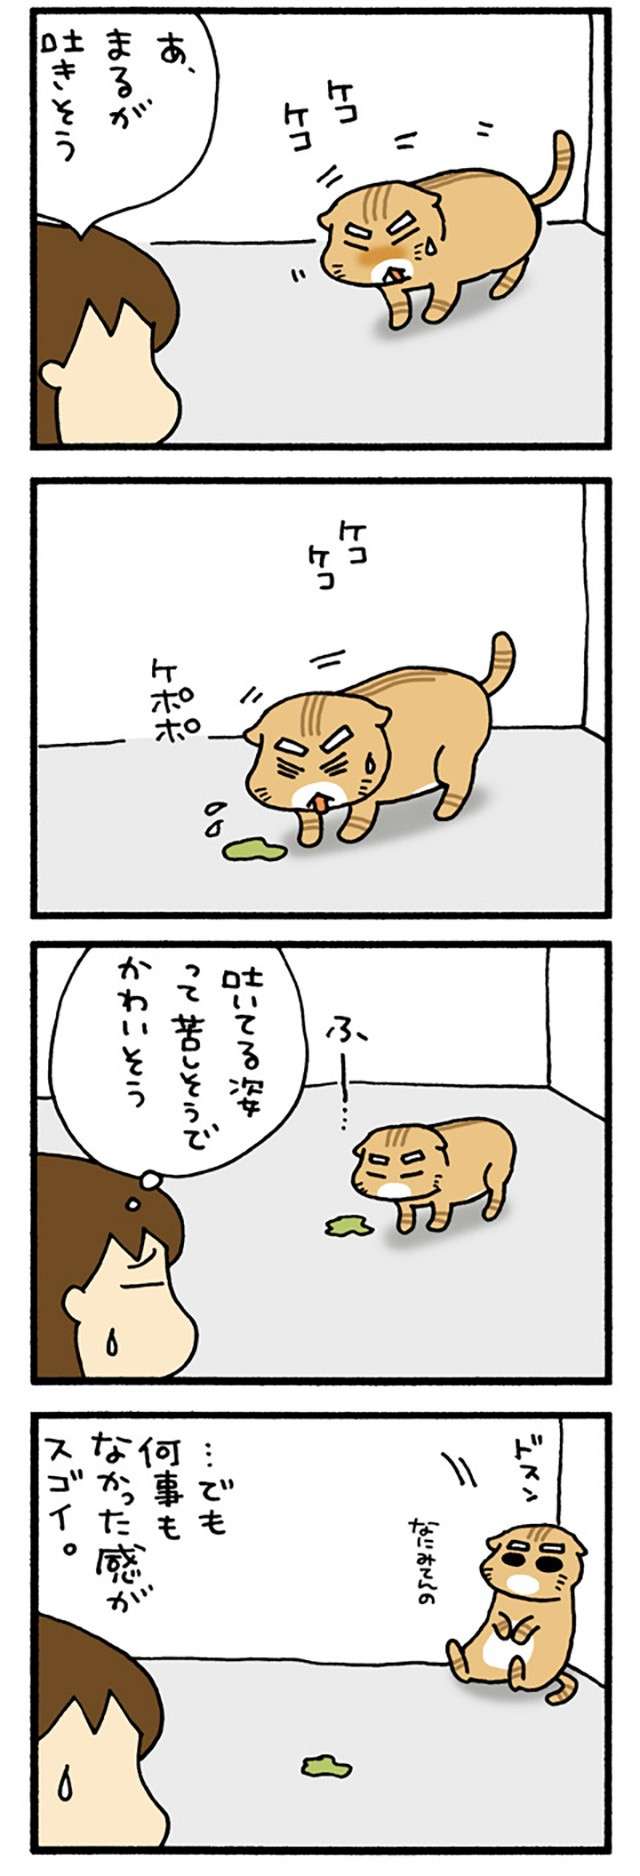 猫はけっこう「吐く」。苦しそうでかわいそうになるが...でも／うちの3ねこ uchinosanneko3_016_1.jpg